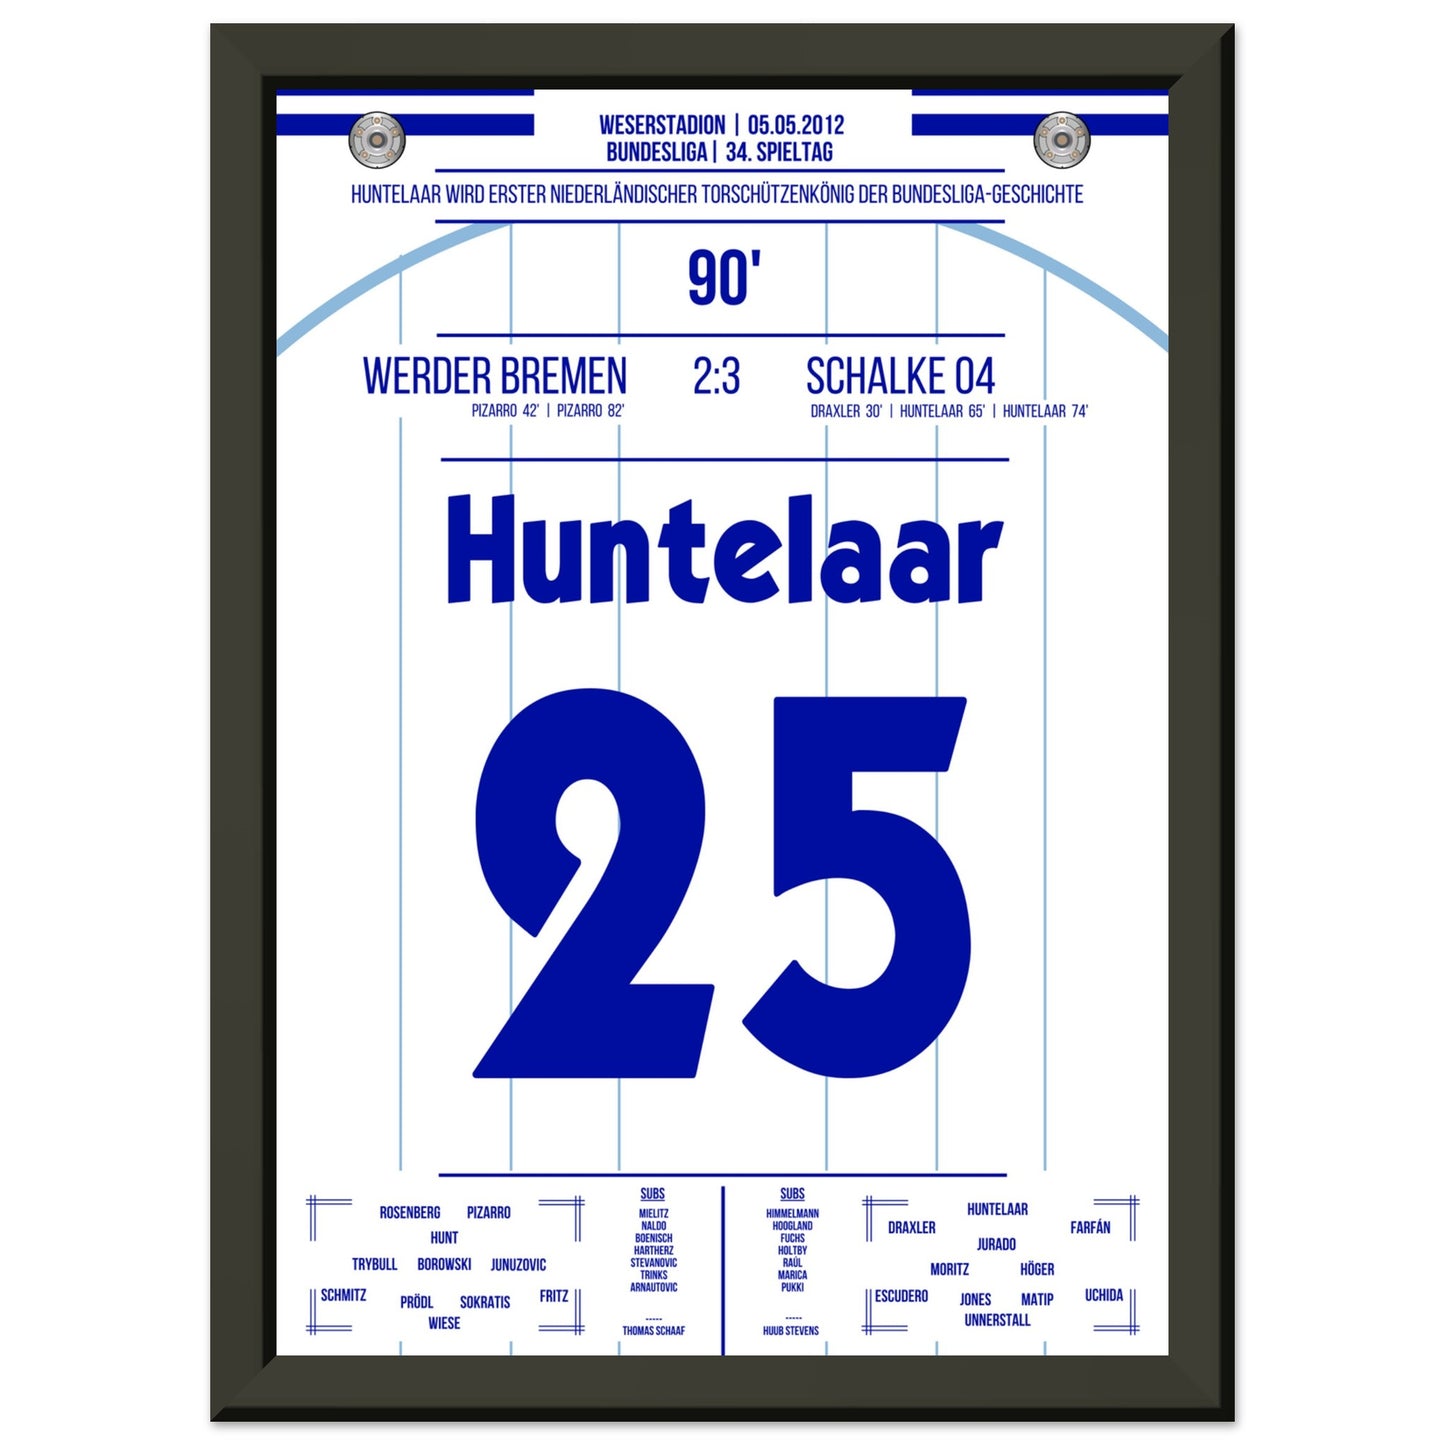 Huntelaar wird erster niederländischer Torschützenkönig der Bundesliga